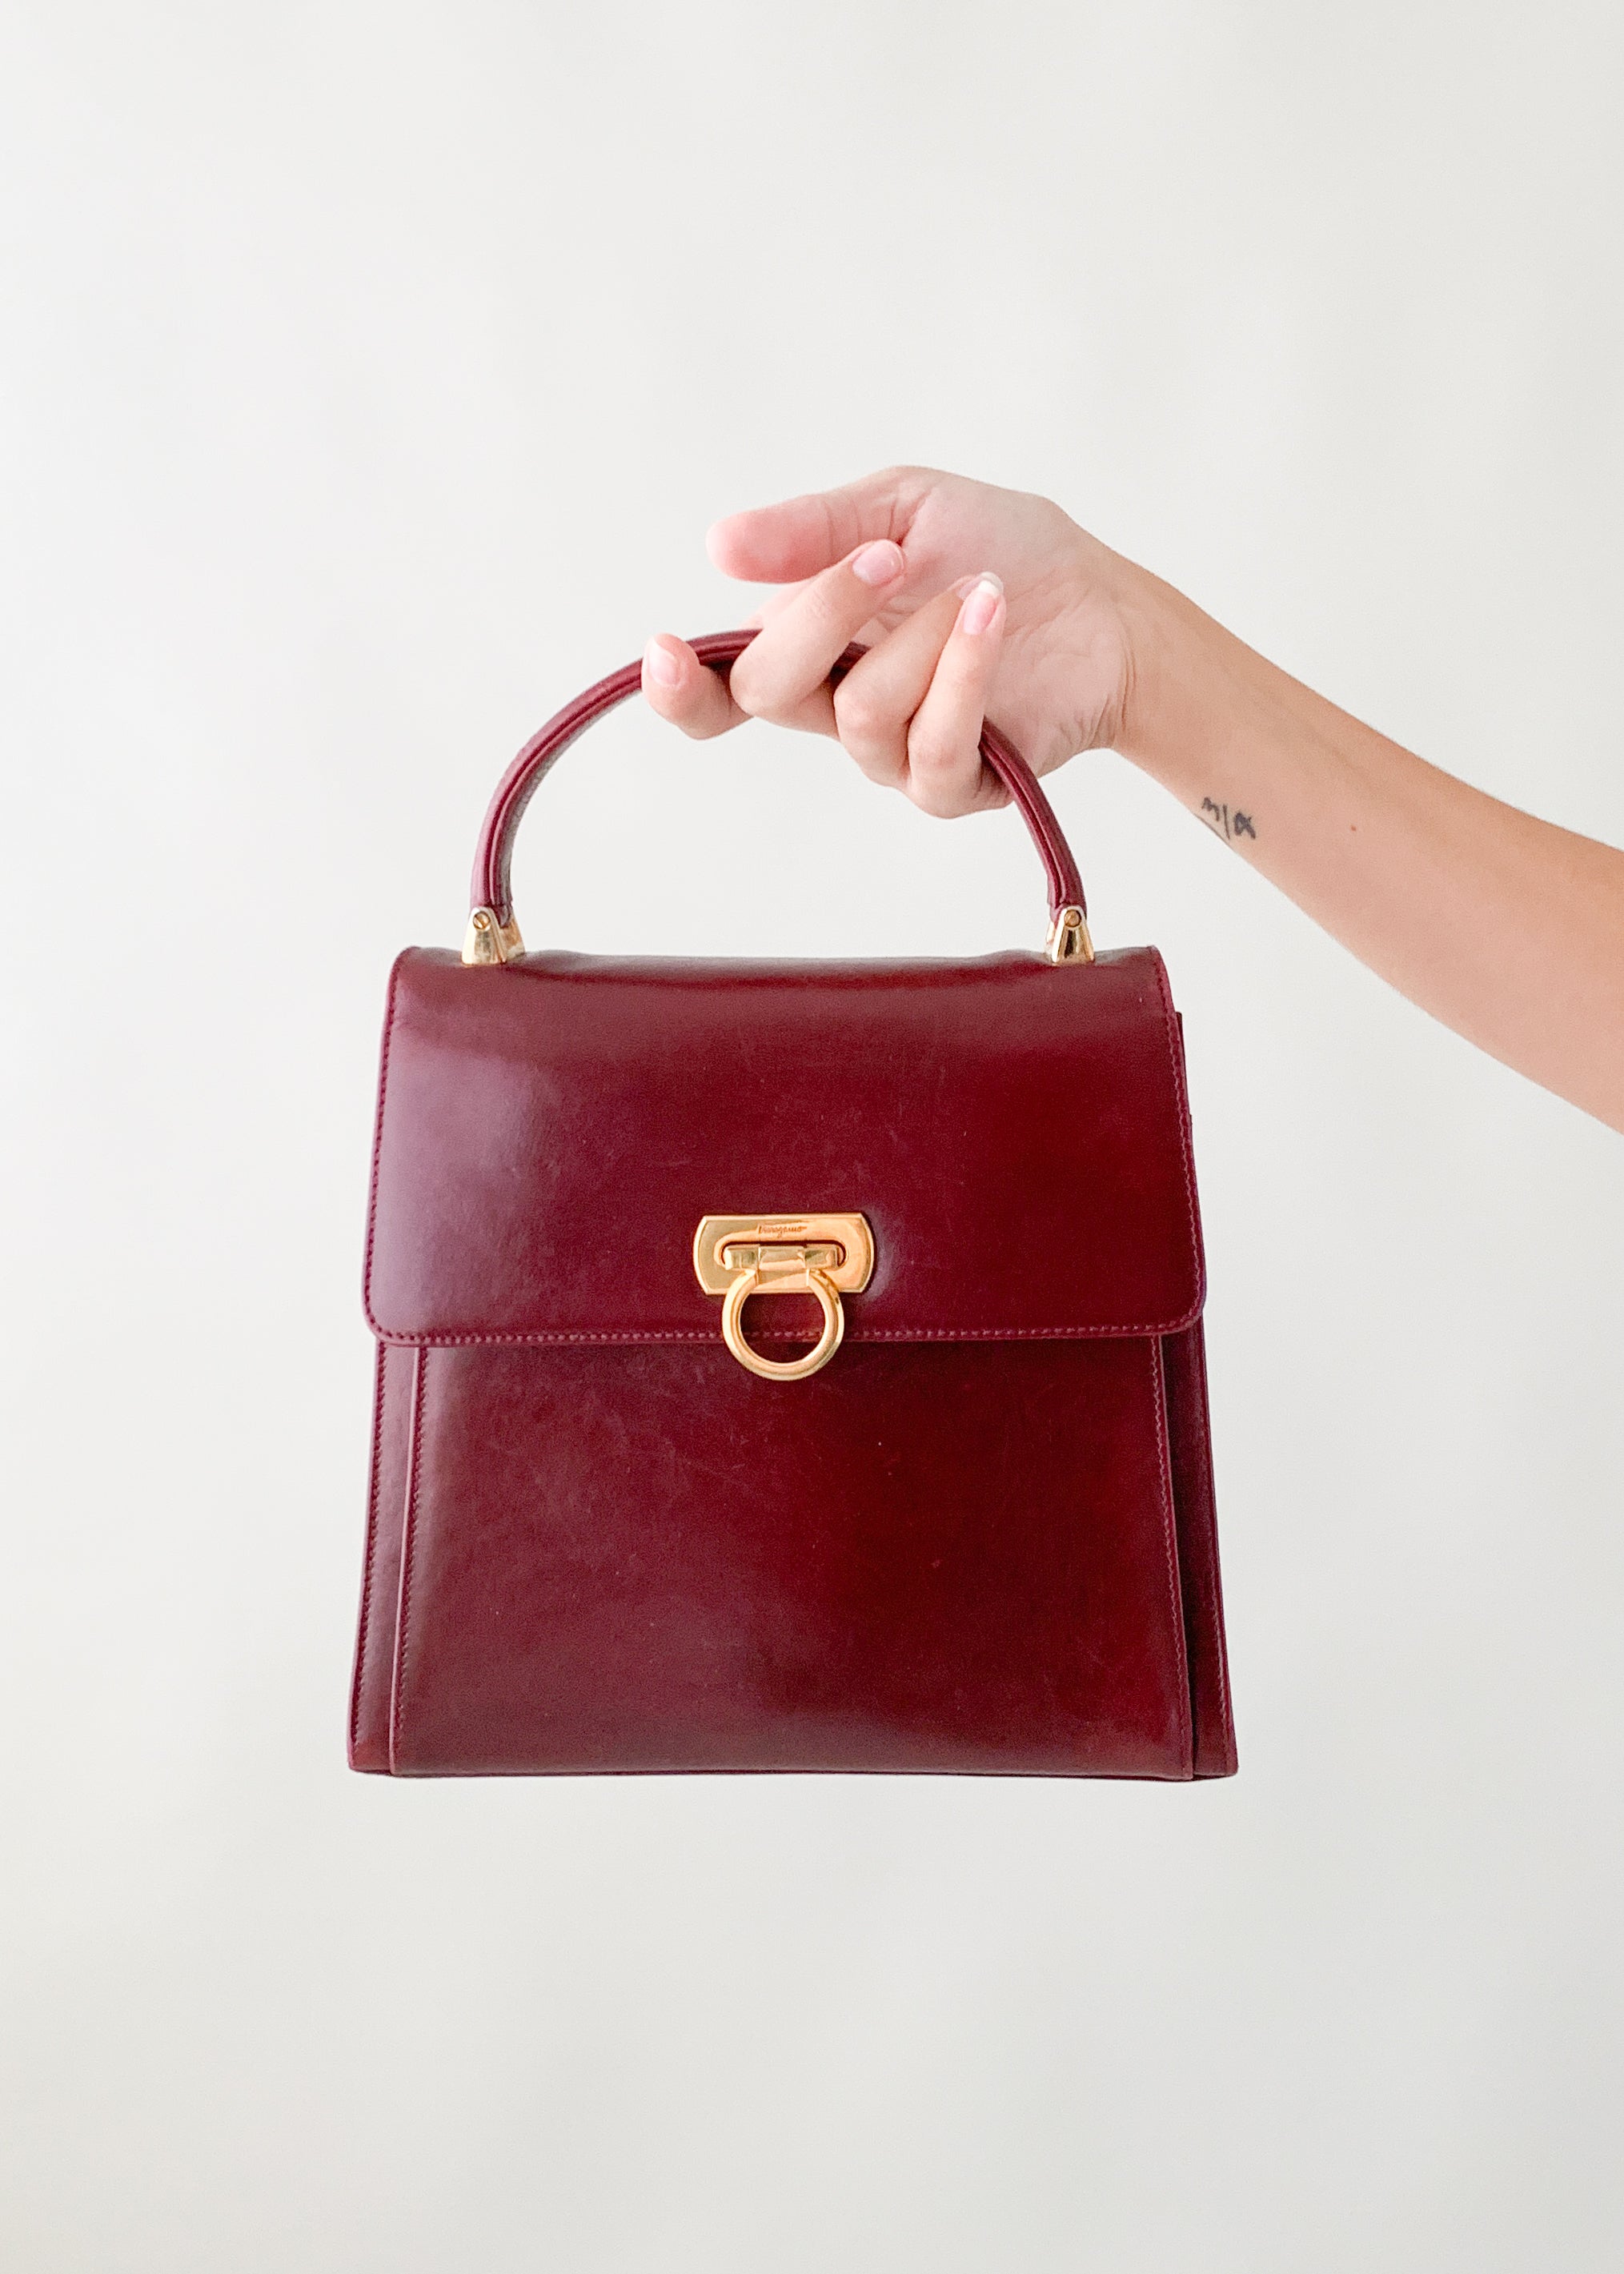 Salvatore Ferragamo Handbag Leather Black Gold Hardware Women's | eLADY  Globazone